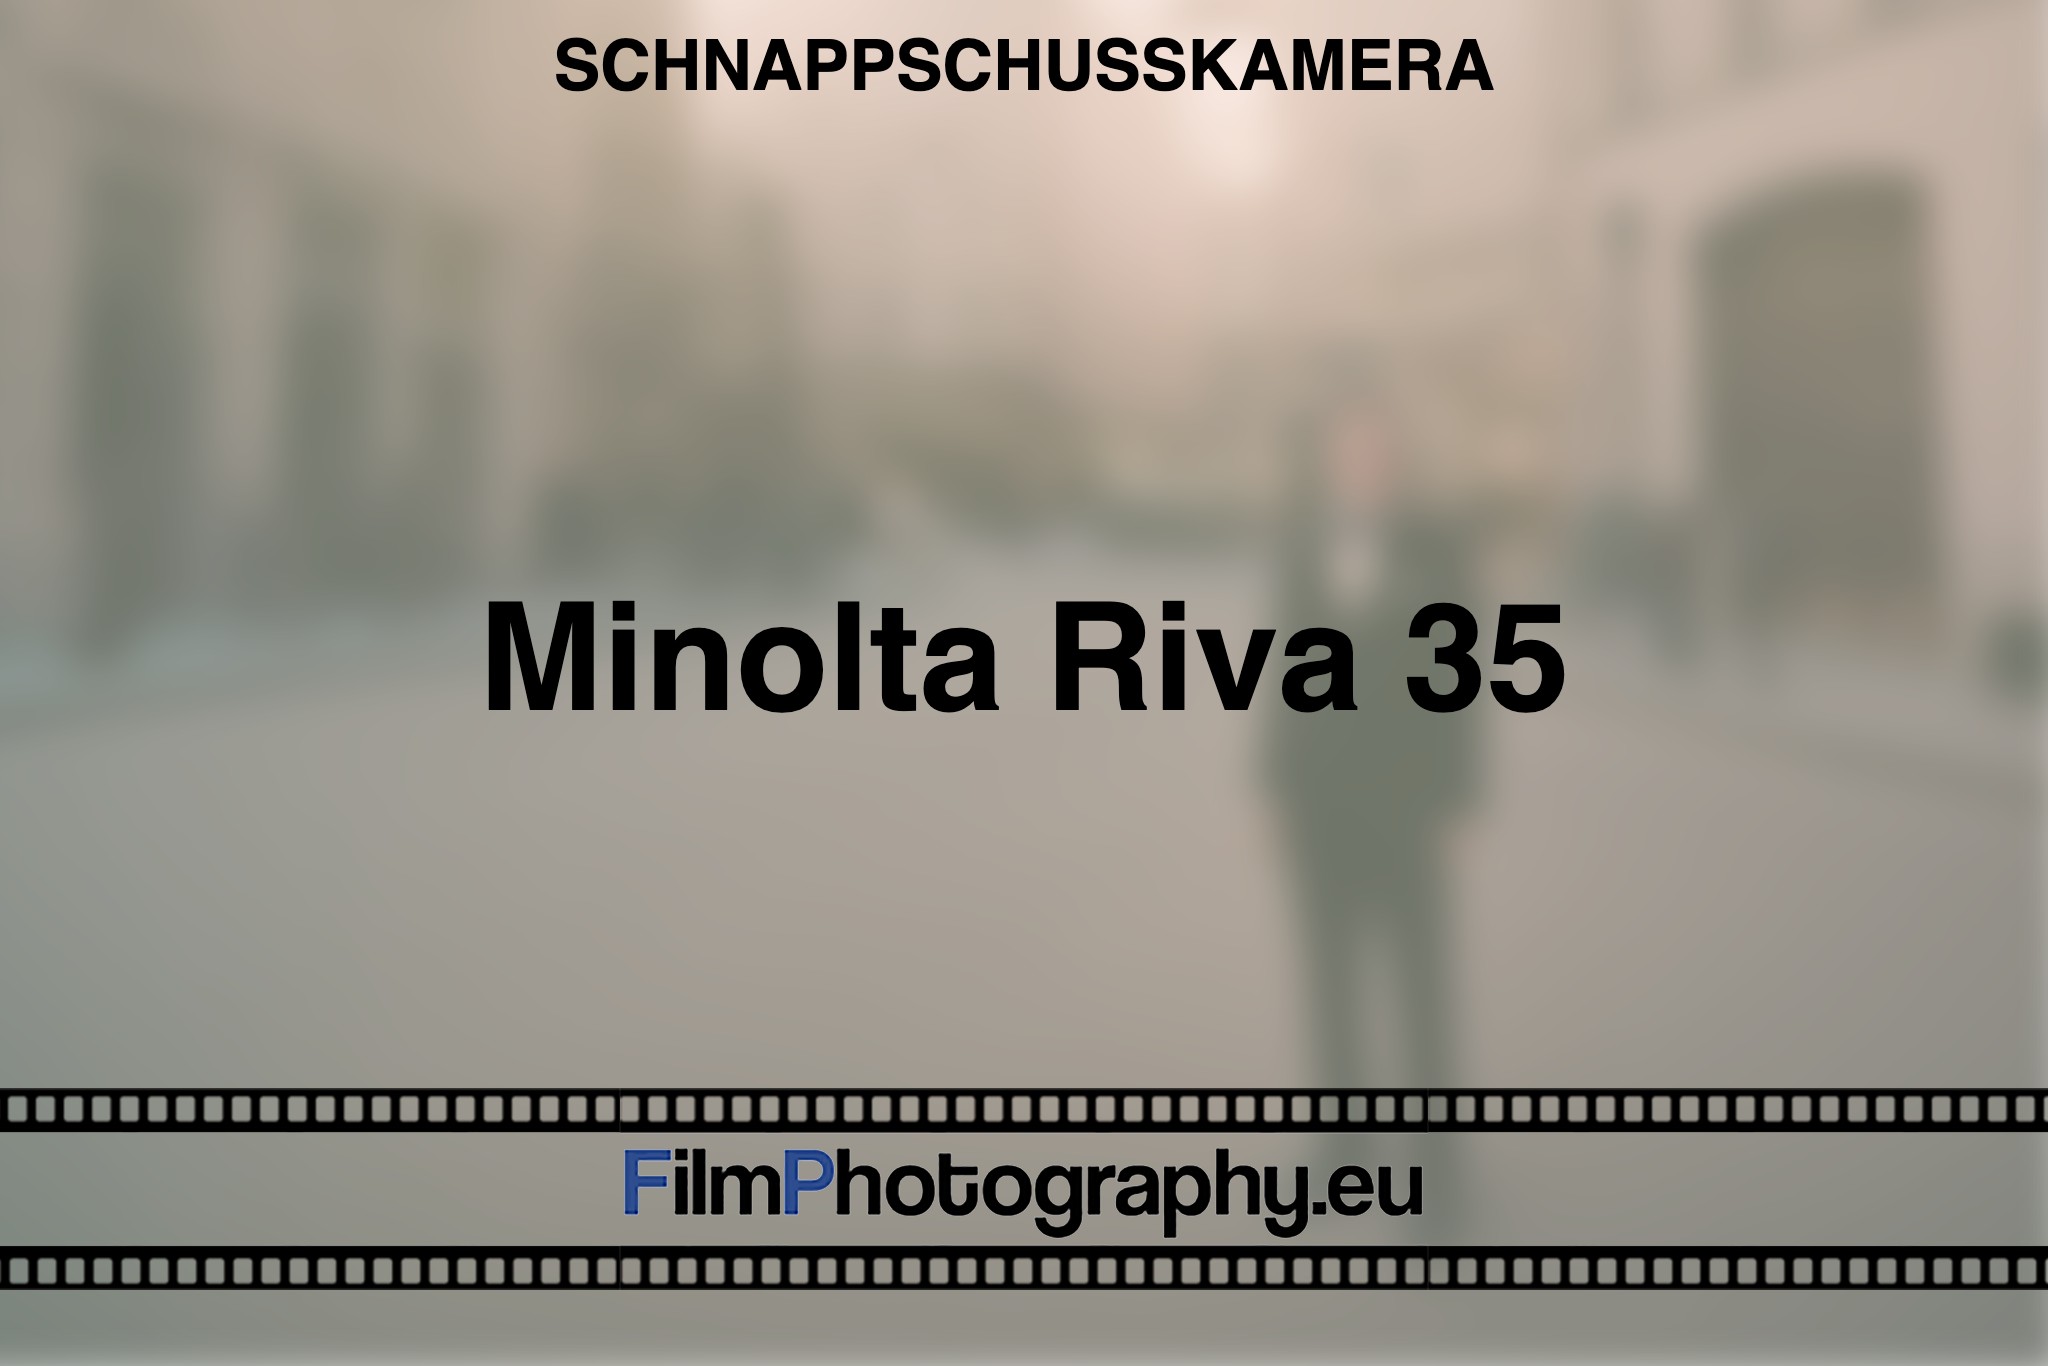 minolta-riva-35-schnappschusskamera-bnv